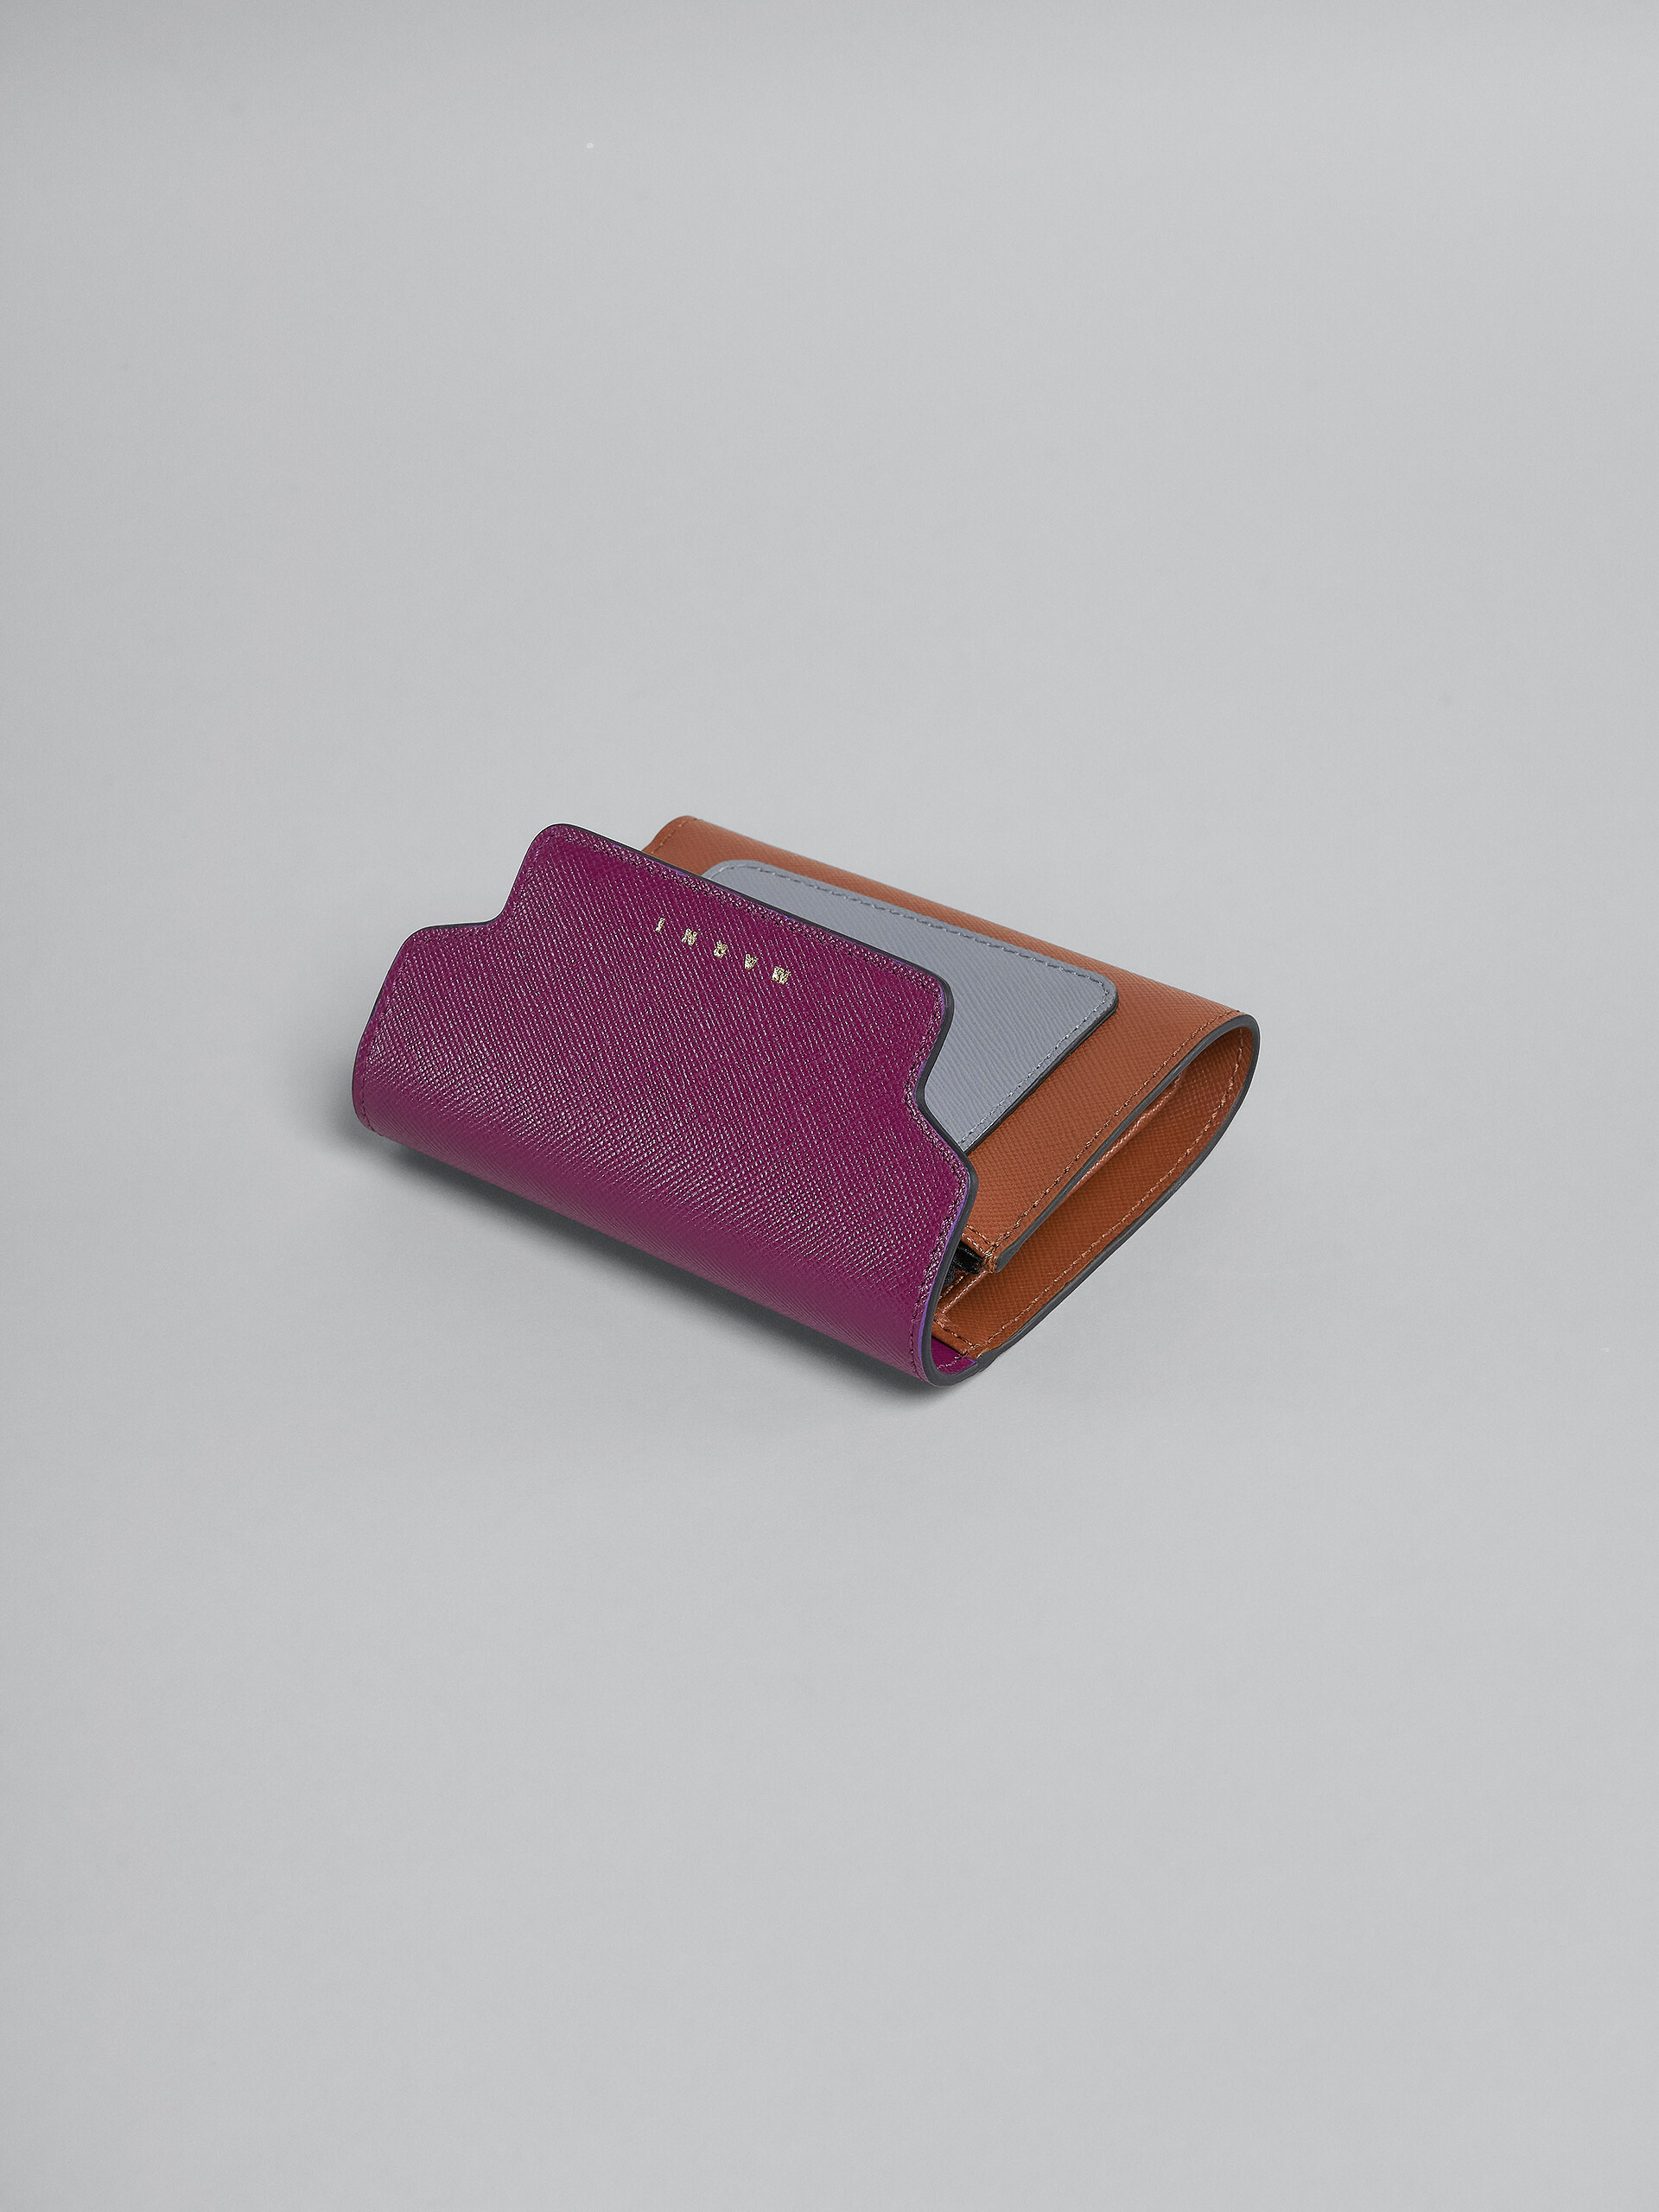 Portafoglio tri-fold in saffiano viola grigio e marrone - Portafogli - Image 4